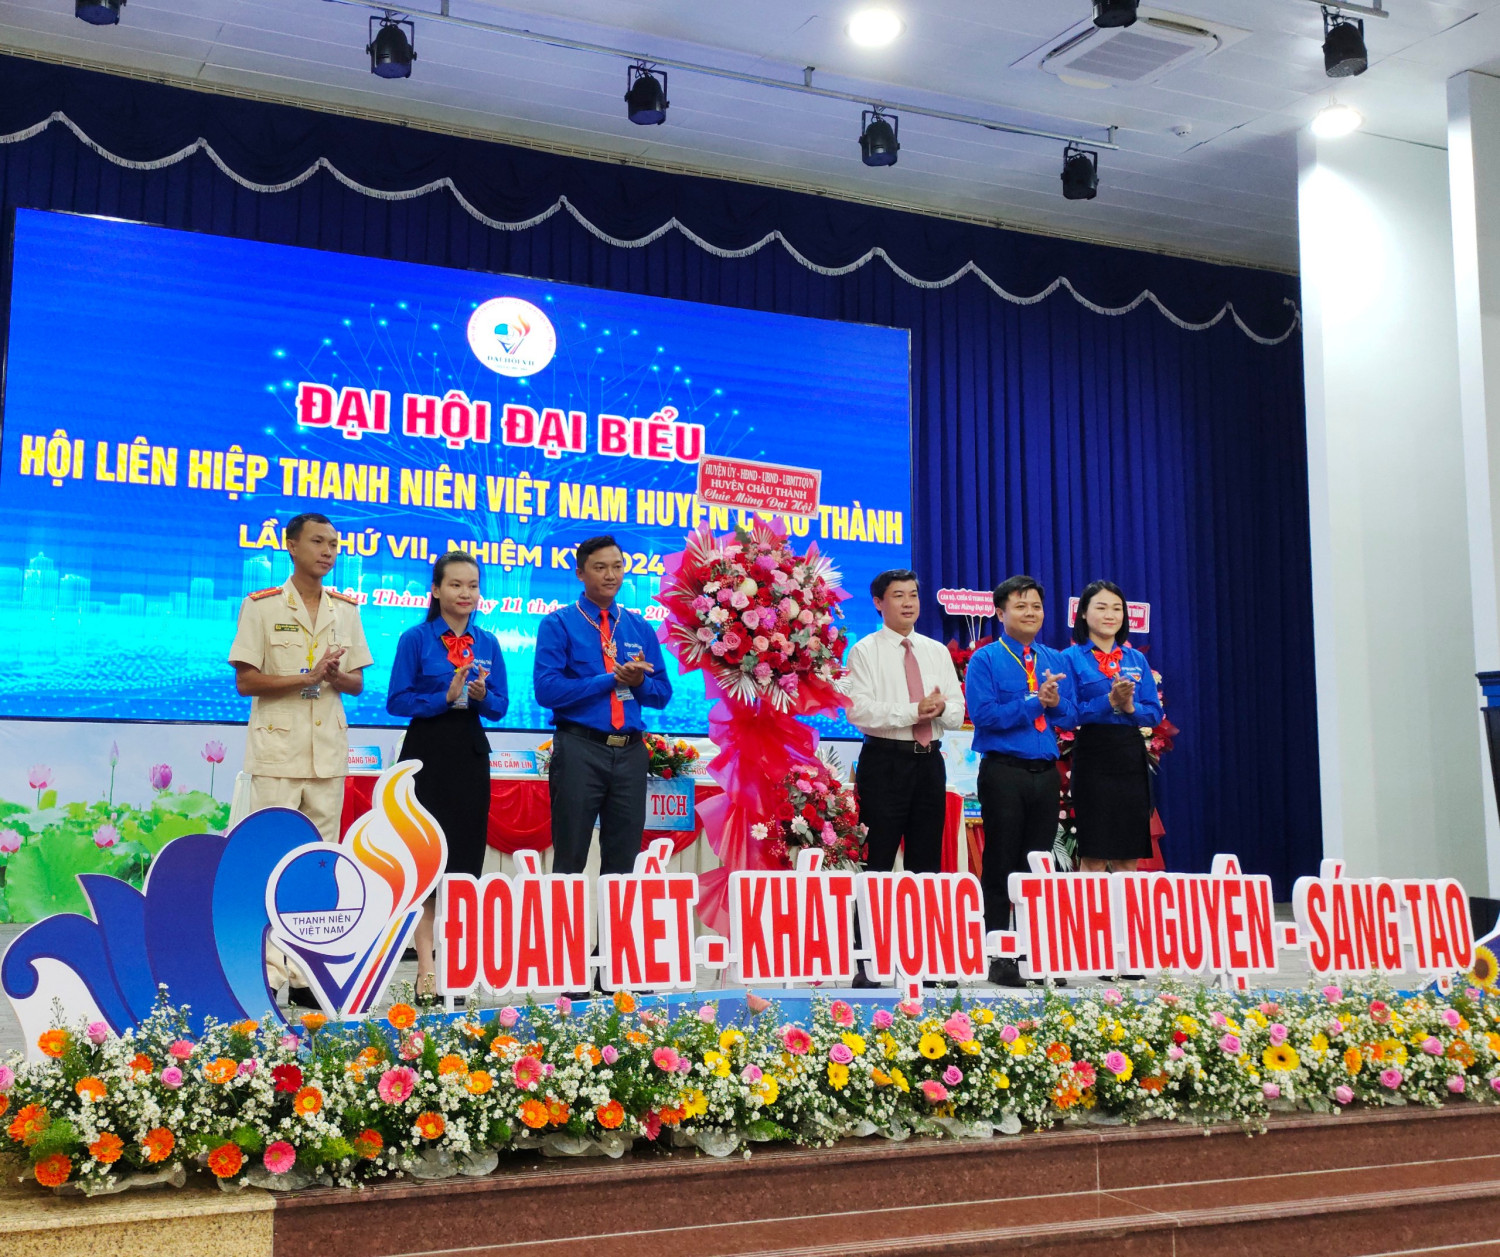 Anh Lê Hữu Nghị - Bí thư Huyện đoàn tiếp tục giữ chức Chủ tịch Ủy ban Hội Liên hiệp Thanh Niên Việt Nam huyện khoá VII, nhiệm kỳ 2024-2029.